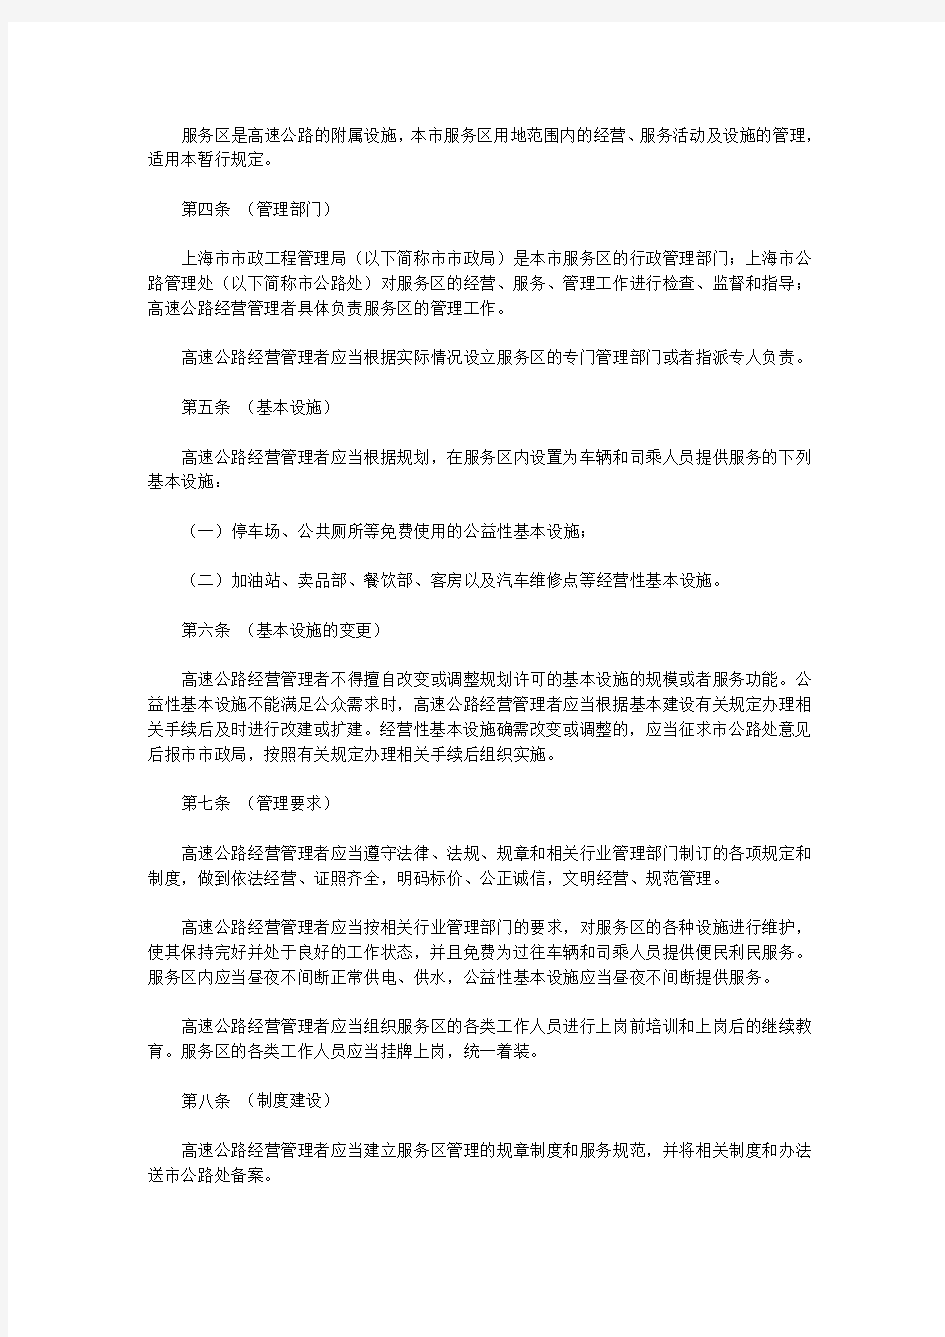 上海市高速公路服务区运营管理暂行规定